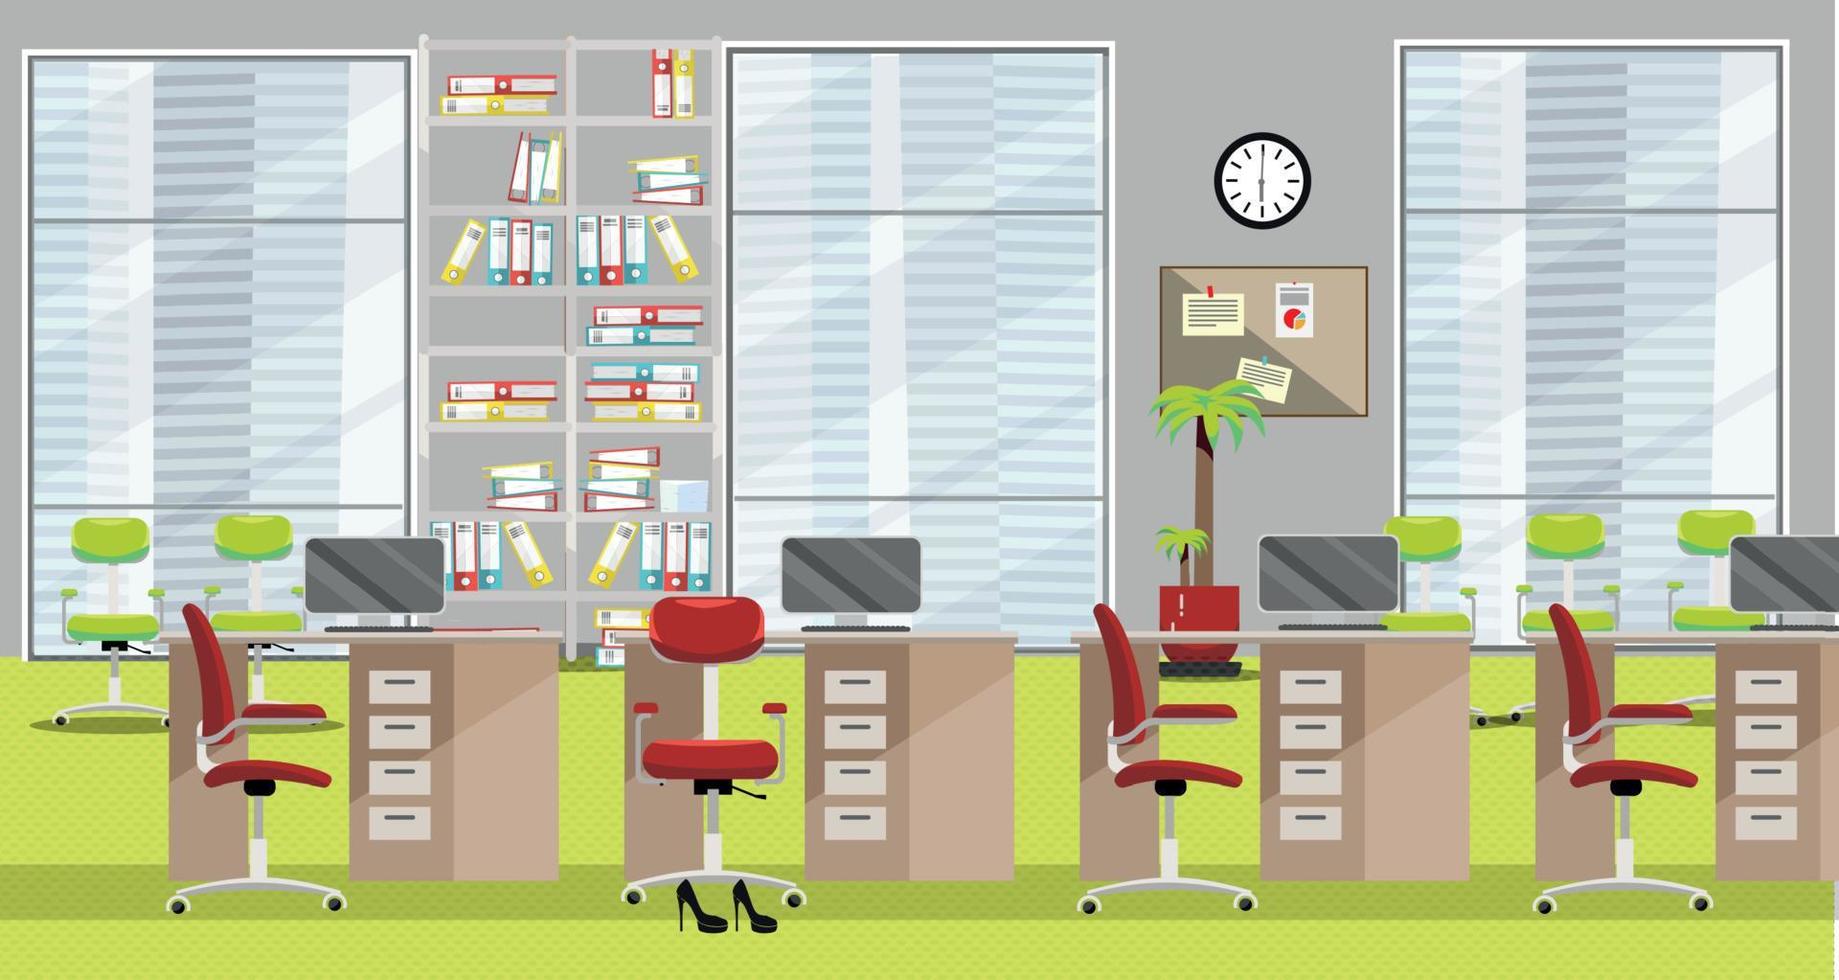 ilustração plana do interior do escritório moderno com 4 mesas, cadeiras clarete, grandes janelas e tapete verde claro em arranha-céu. espaço aberto com palmeira, rack de arquivo com documentos, relógio, notas. vetor